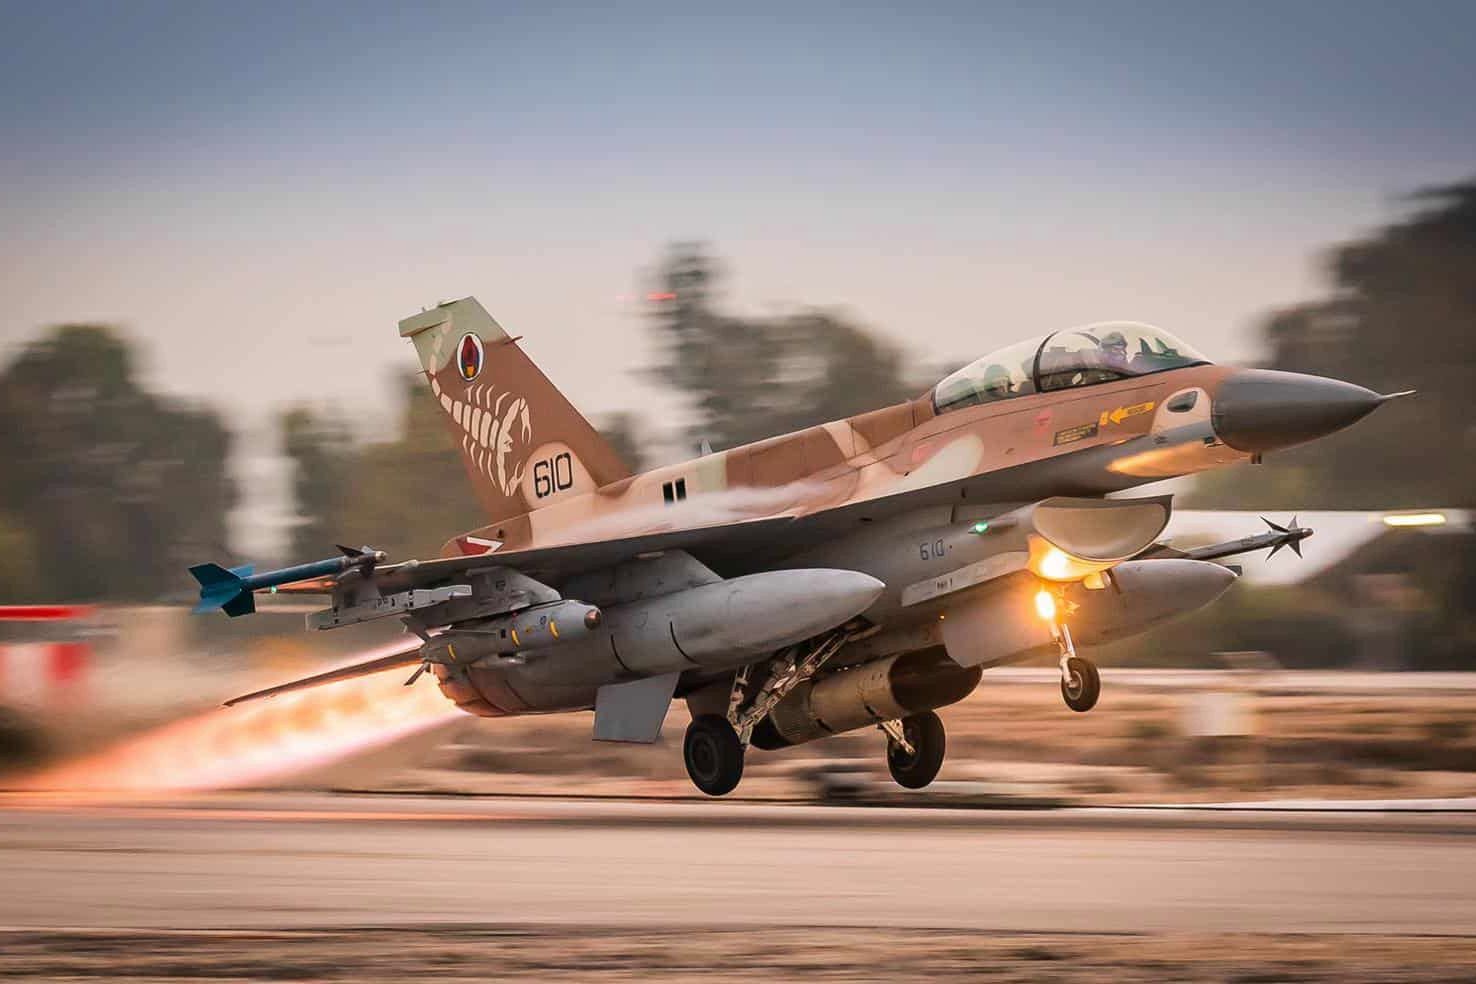 Израиль истребителями F-16 разгромил базу союзника РФ в Сирии - системы ПВО не сработали